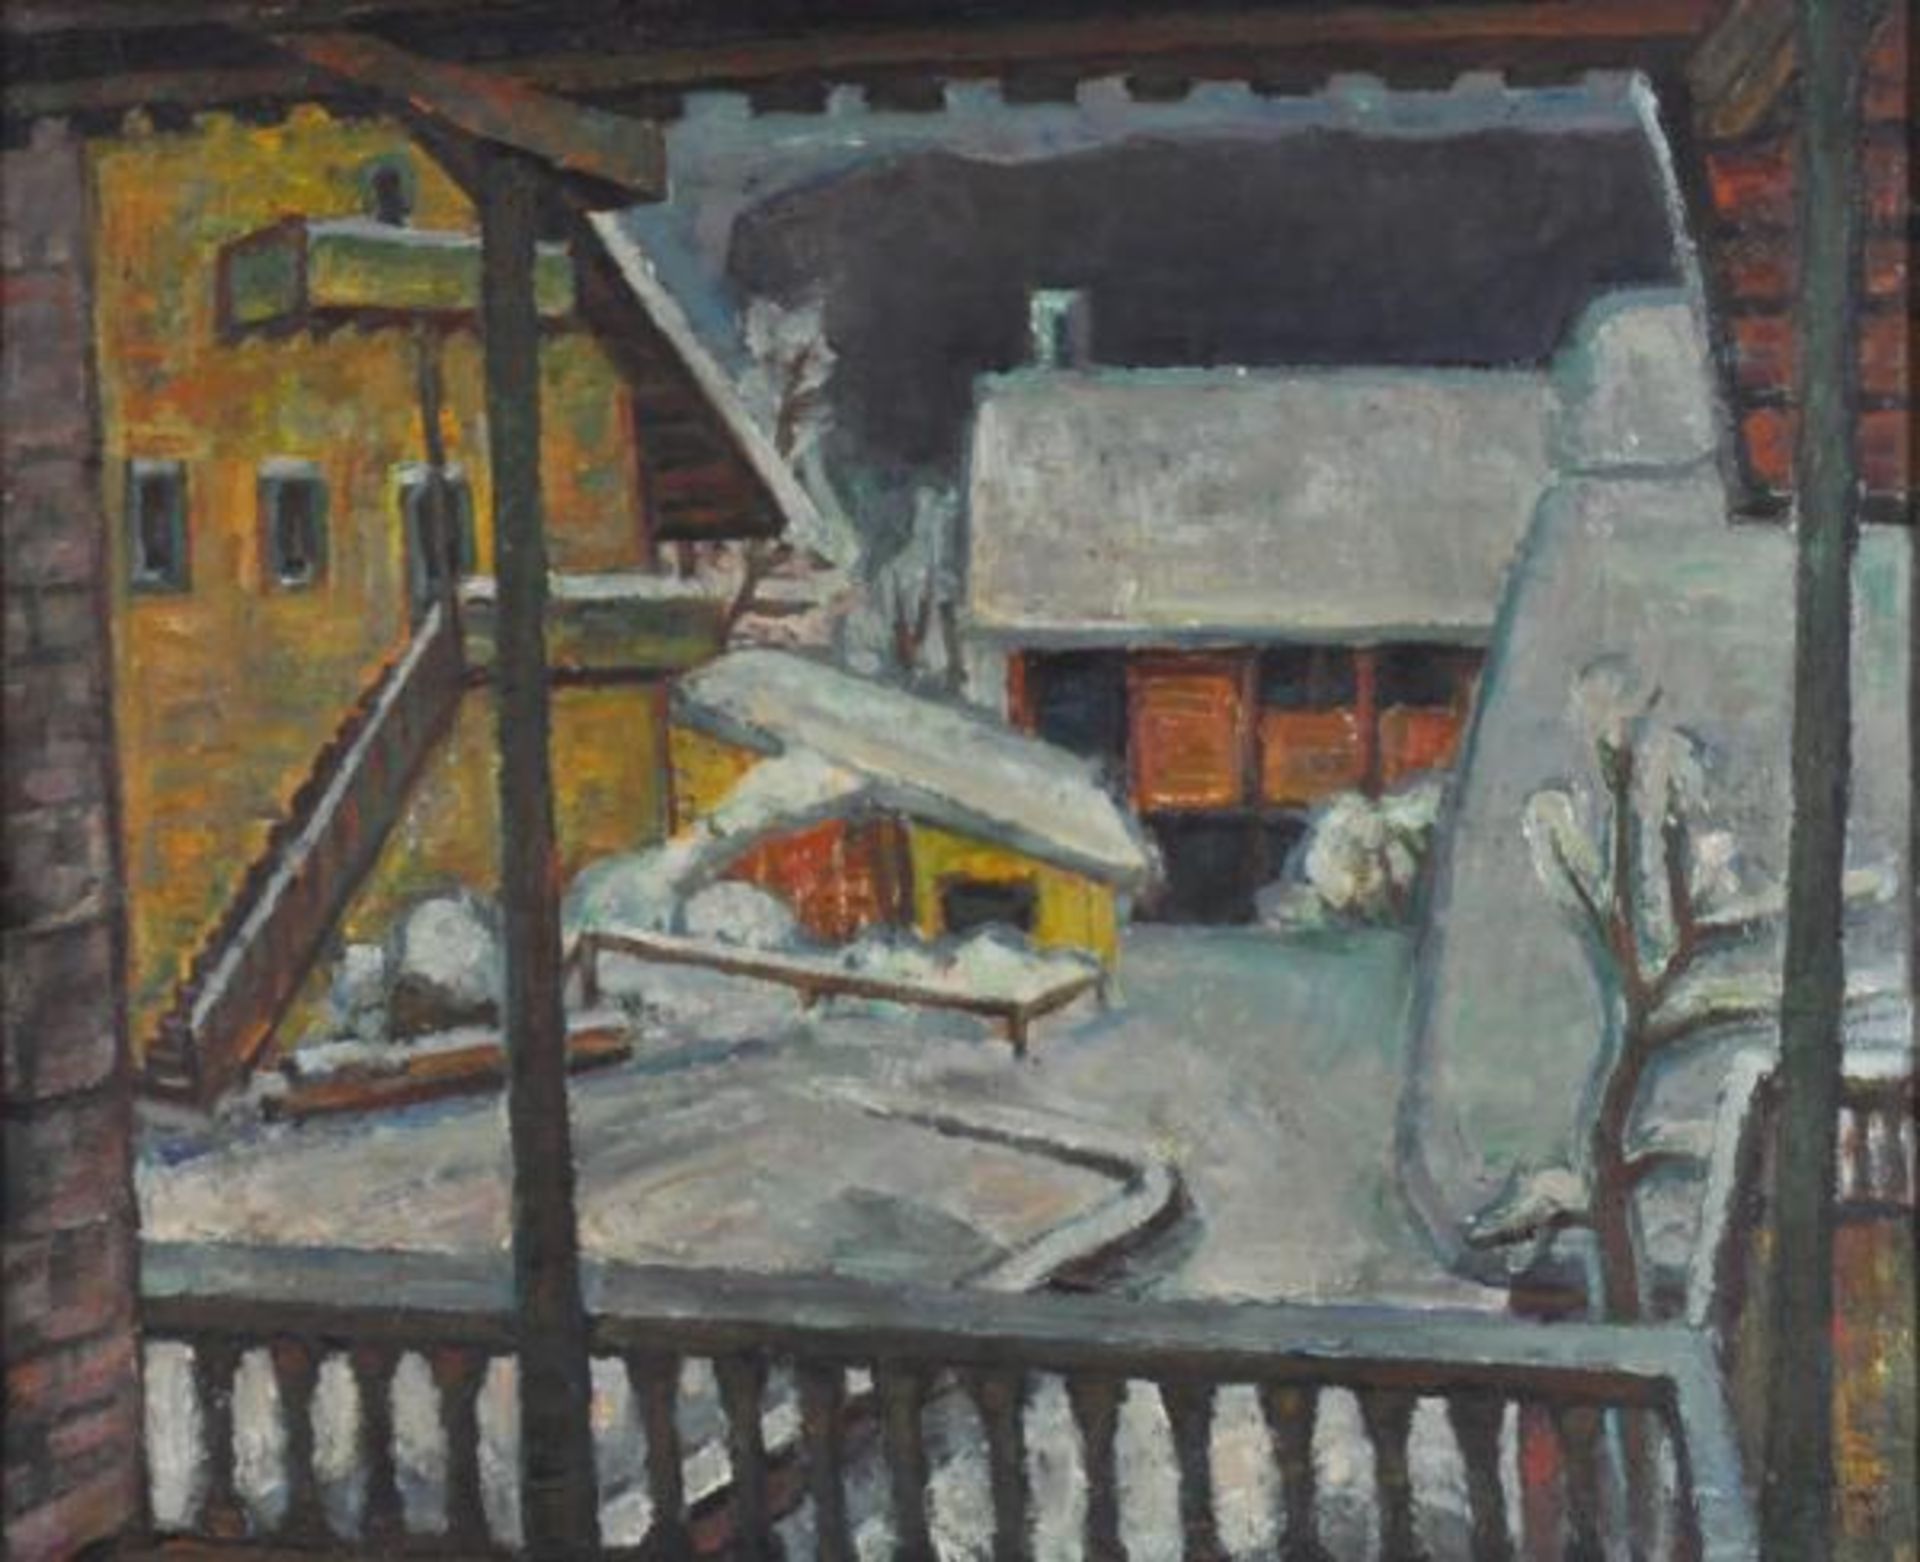 NOE Alfred (1903 Weiler/Höri - 2000 Karlsruhe) "Cortina" im Winter, Blick von Veranda auf Hof mit